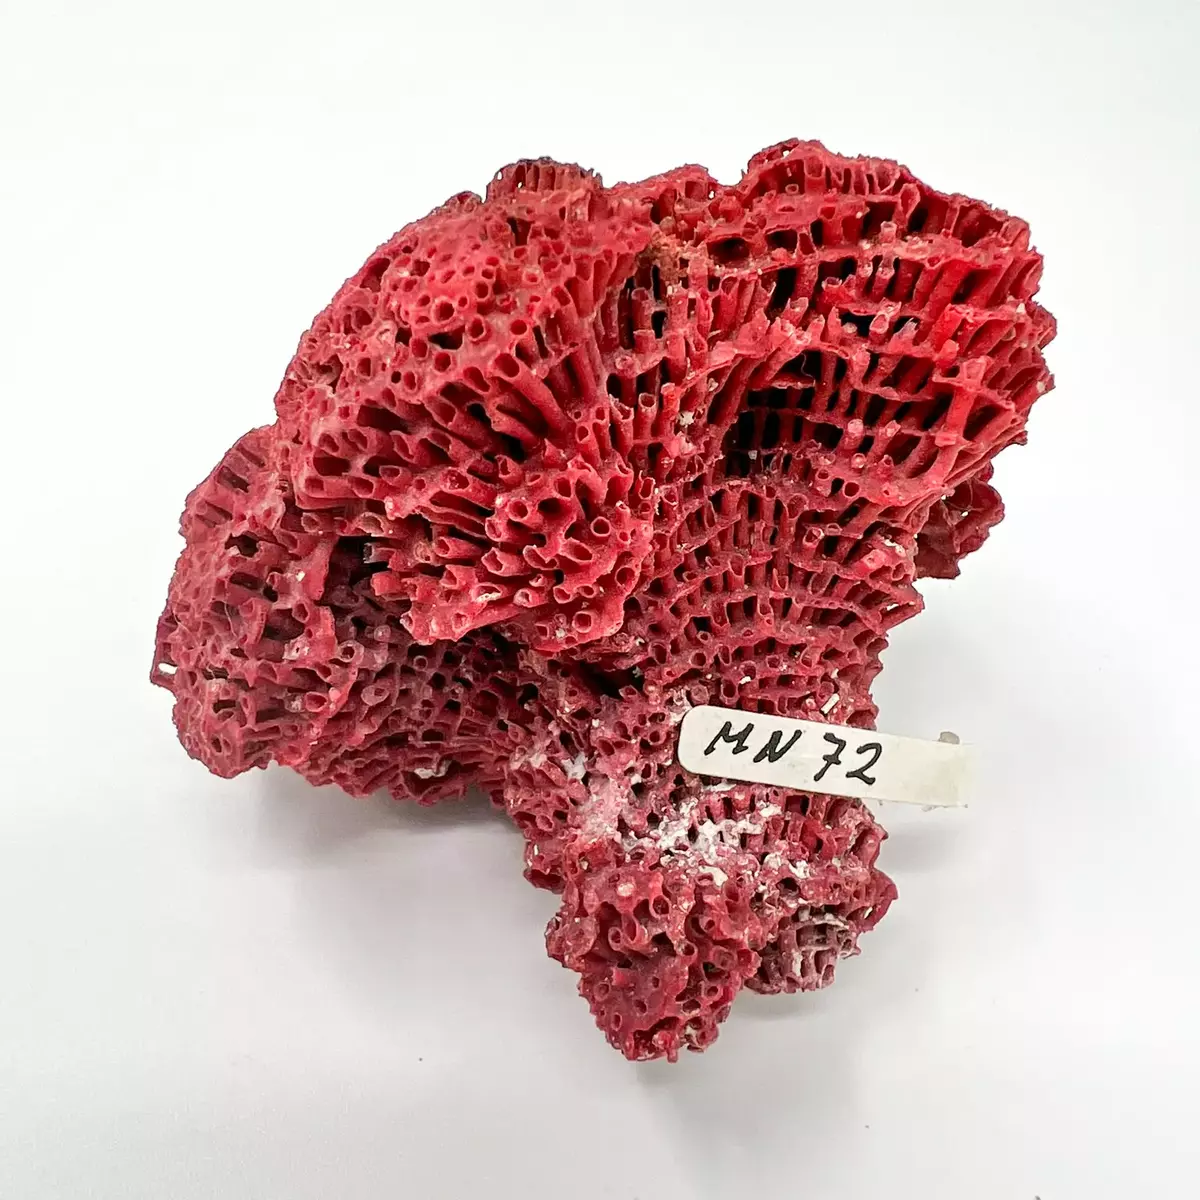 Röd korall, 3 st, porös, 6-8 cm.